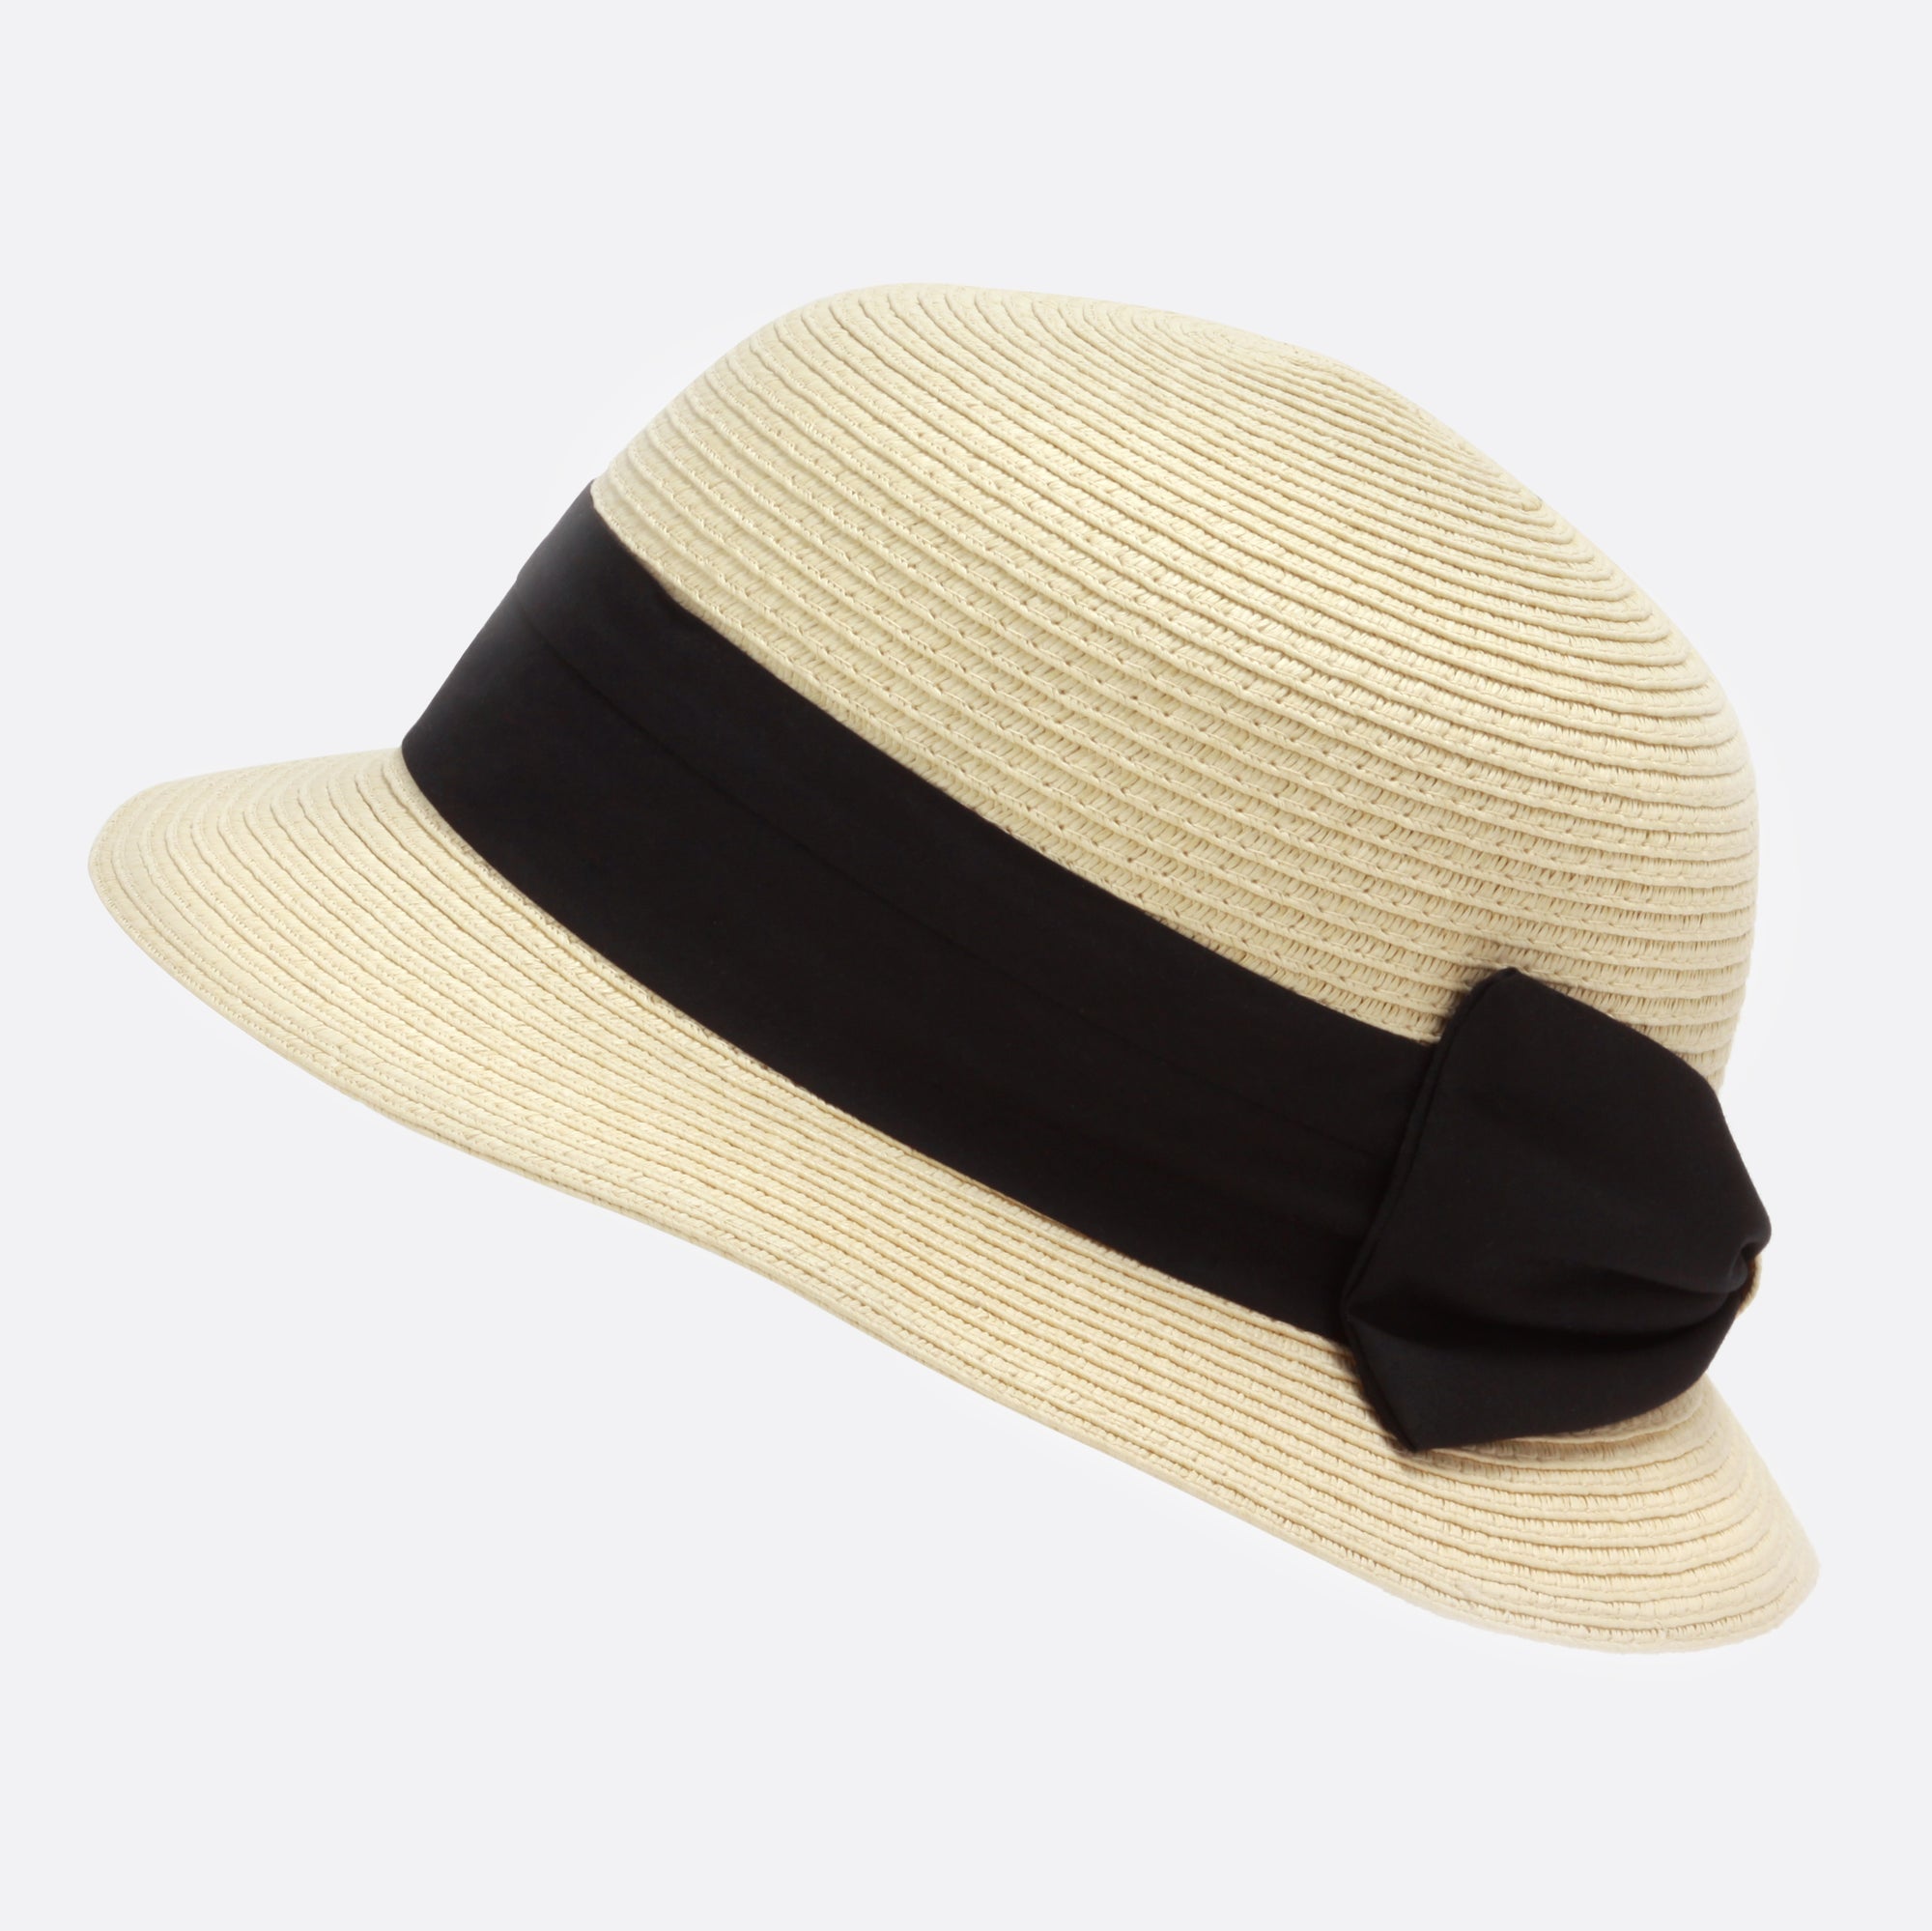 Chapeau cloche beige en paille ajustable avec ruban de tissu noir